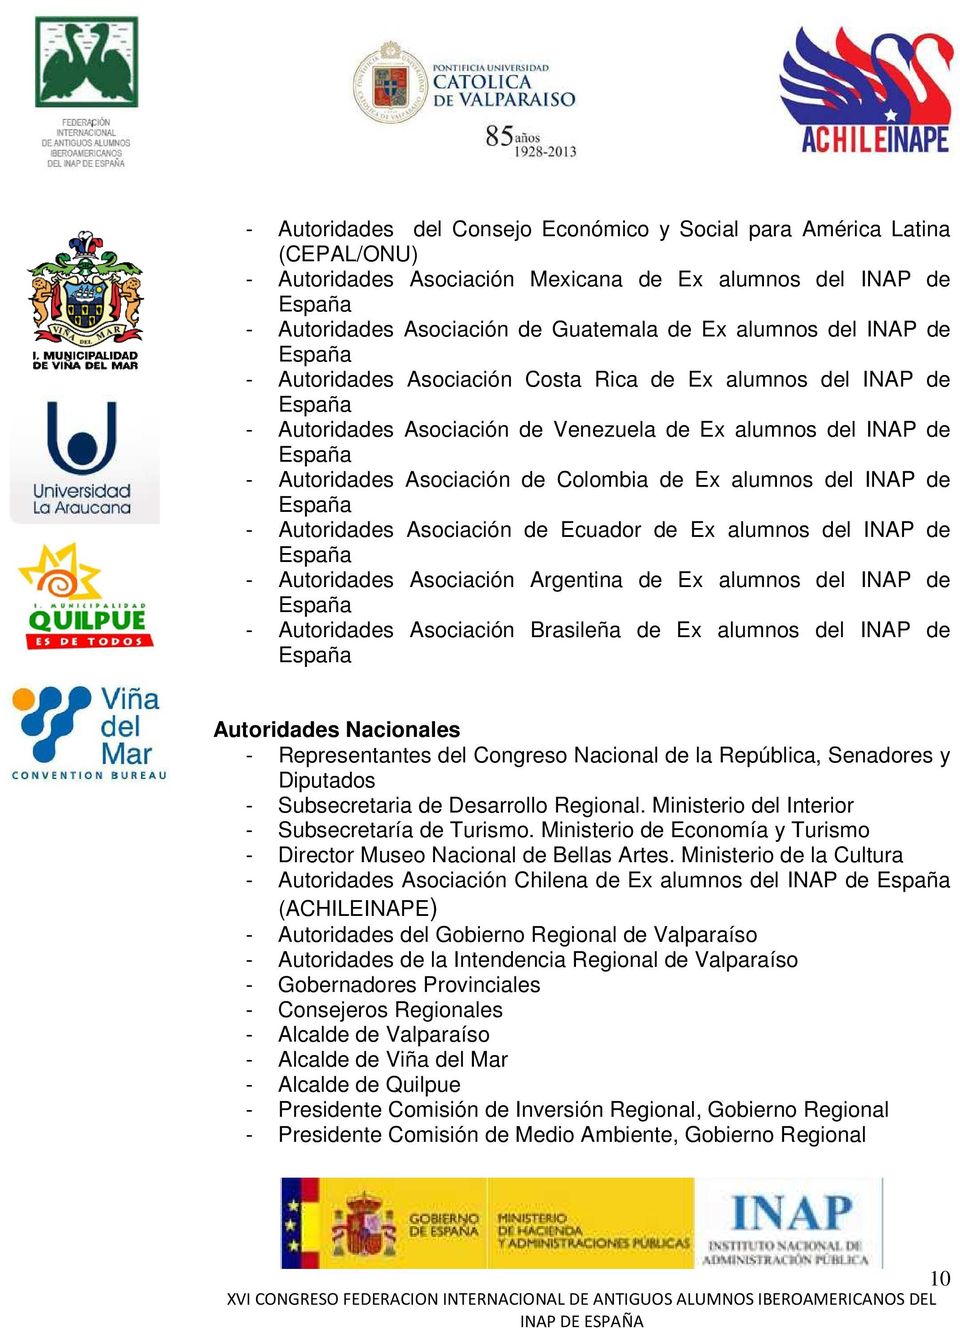 Autoridades Asociación de Ecuador de Ex alumnos del INAP de - Autoridades Asociación Argentina de Ex alumnos del INAP de - Autoridades Asociación Brasileña de Ex alumnos del INAP de Autoridades